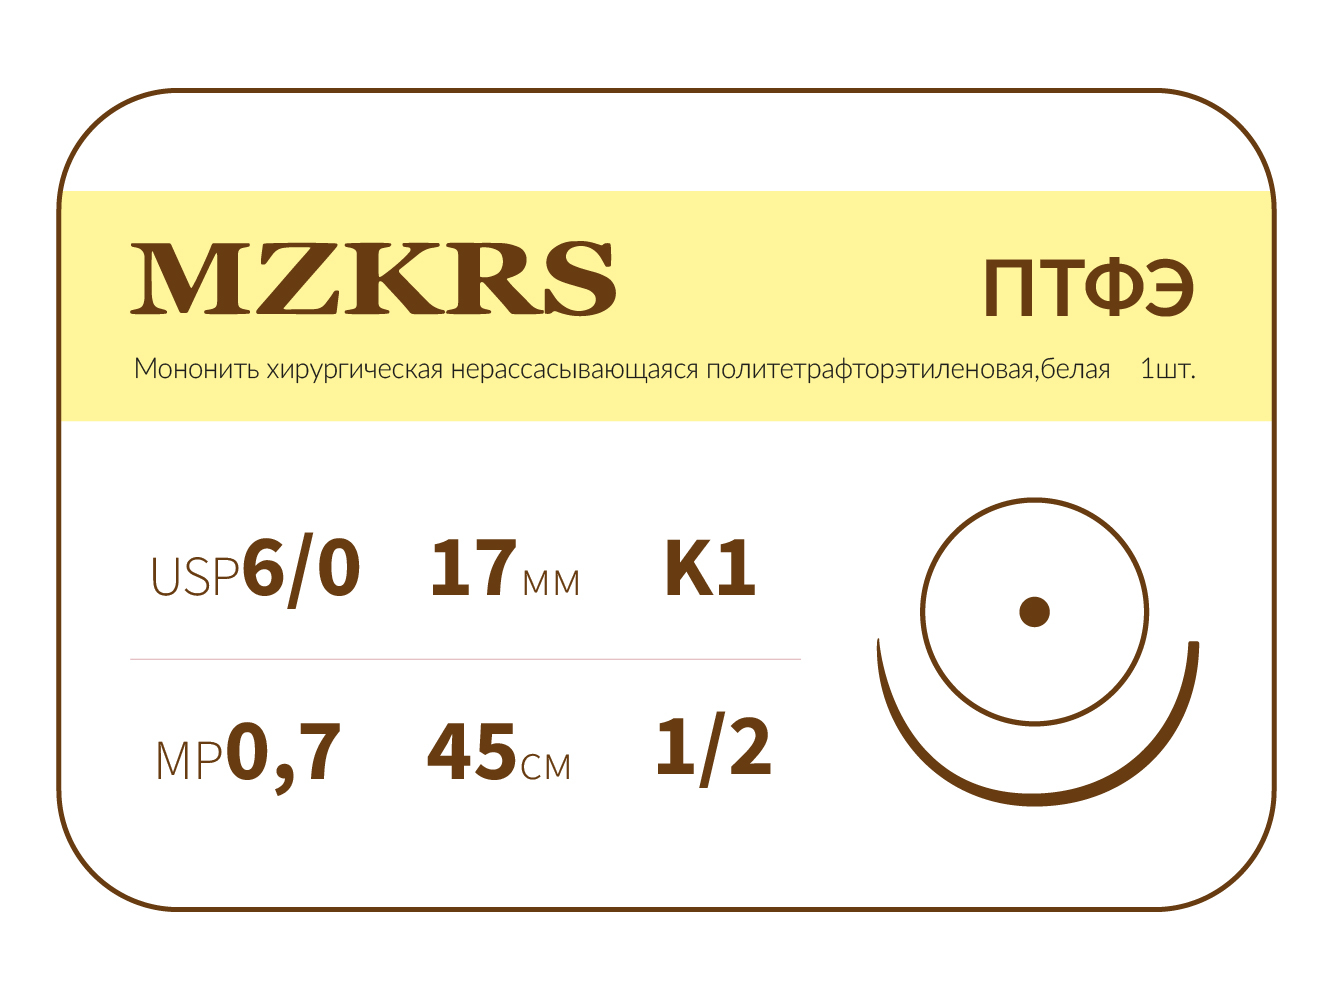 1712К-Premium 6/0 (0.7) 45 ПТФЭ хирургическая нить политетрафторэтиленовая, MZKRS (Россия)